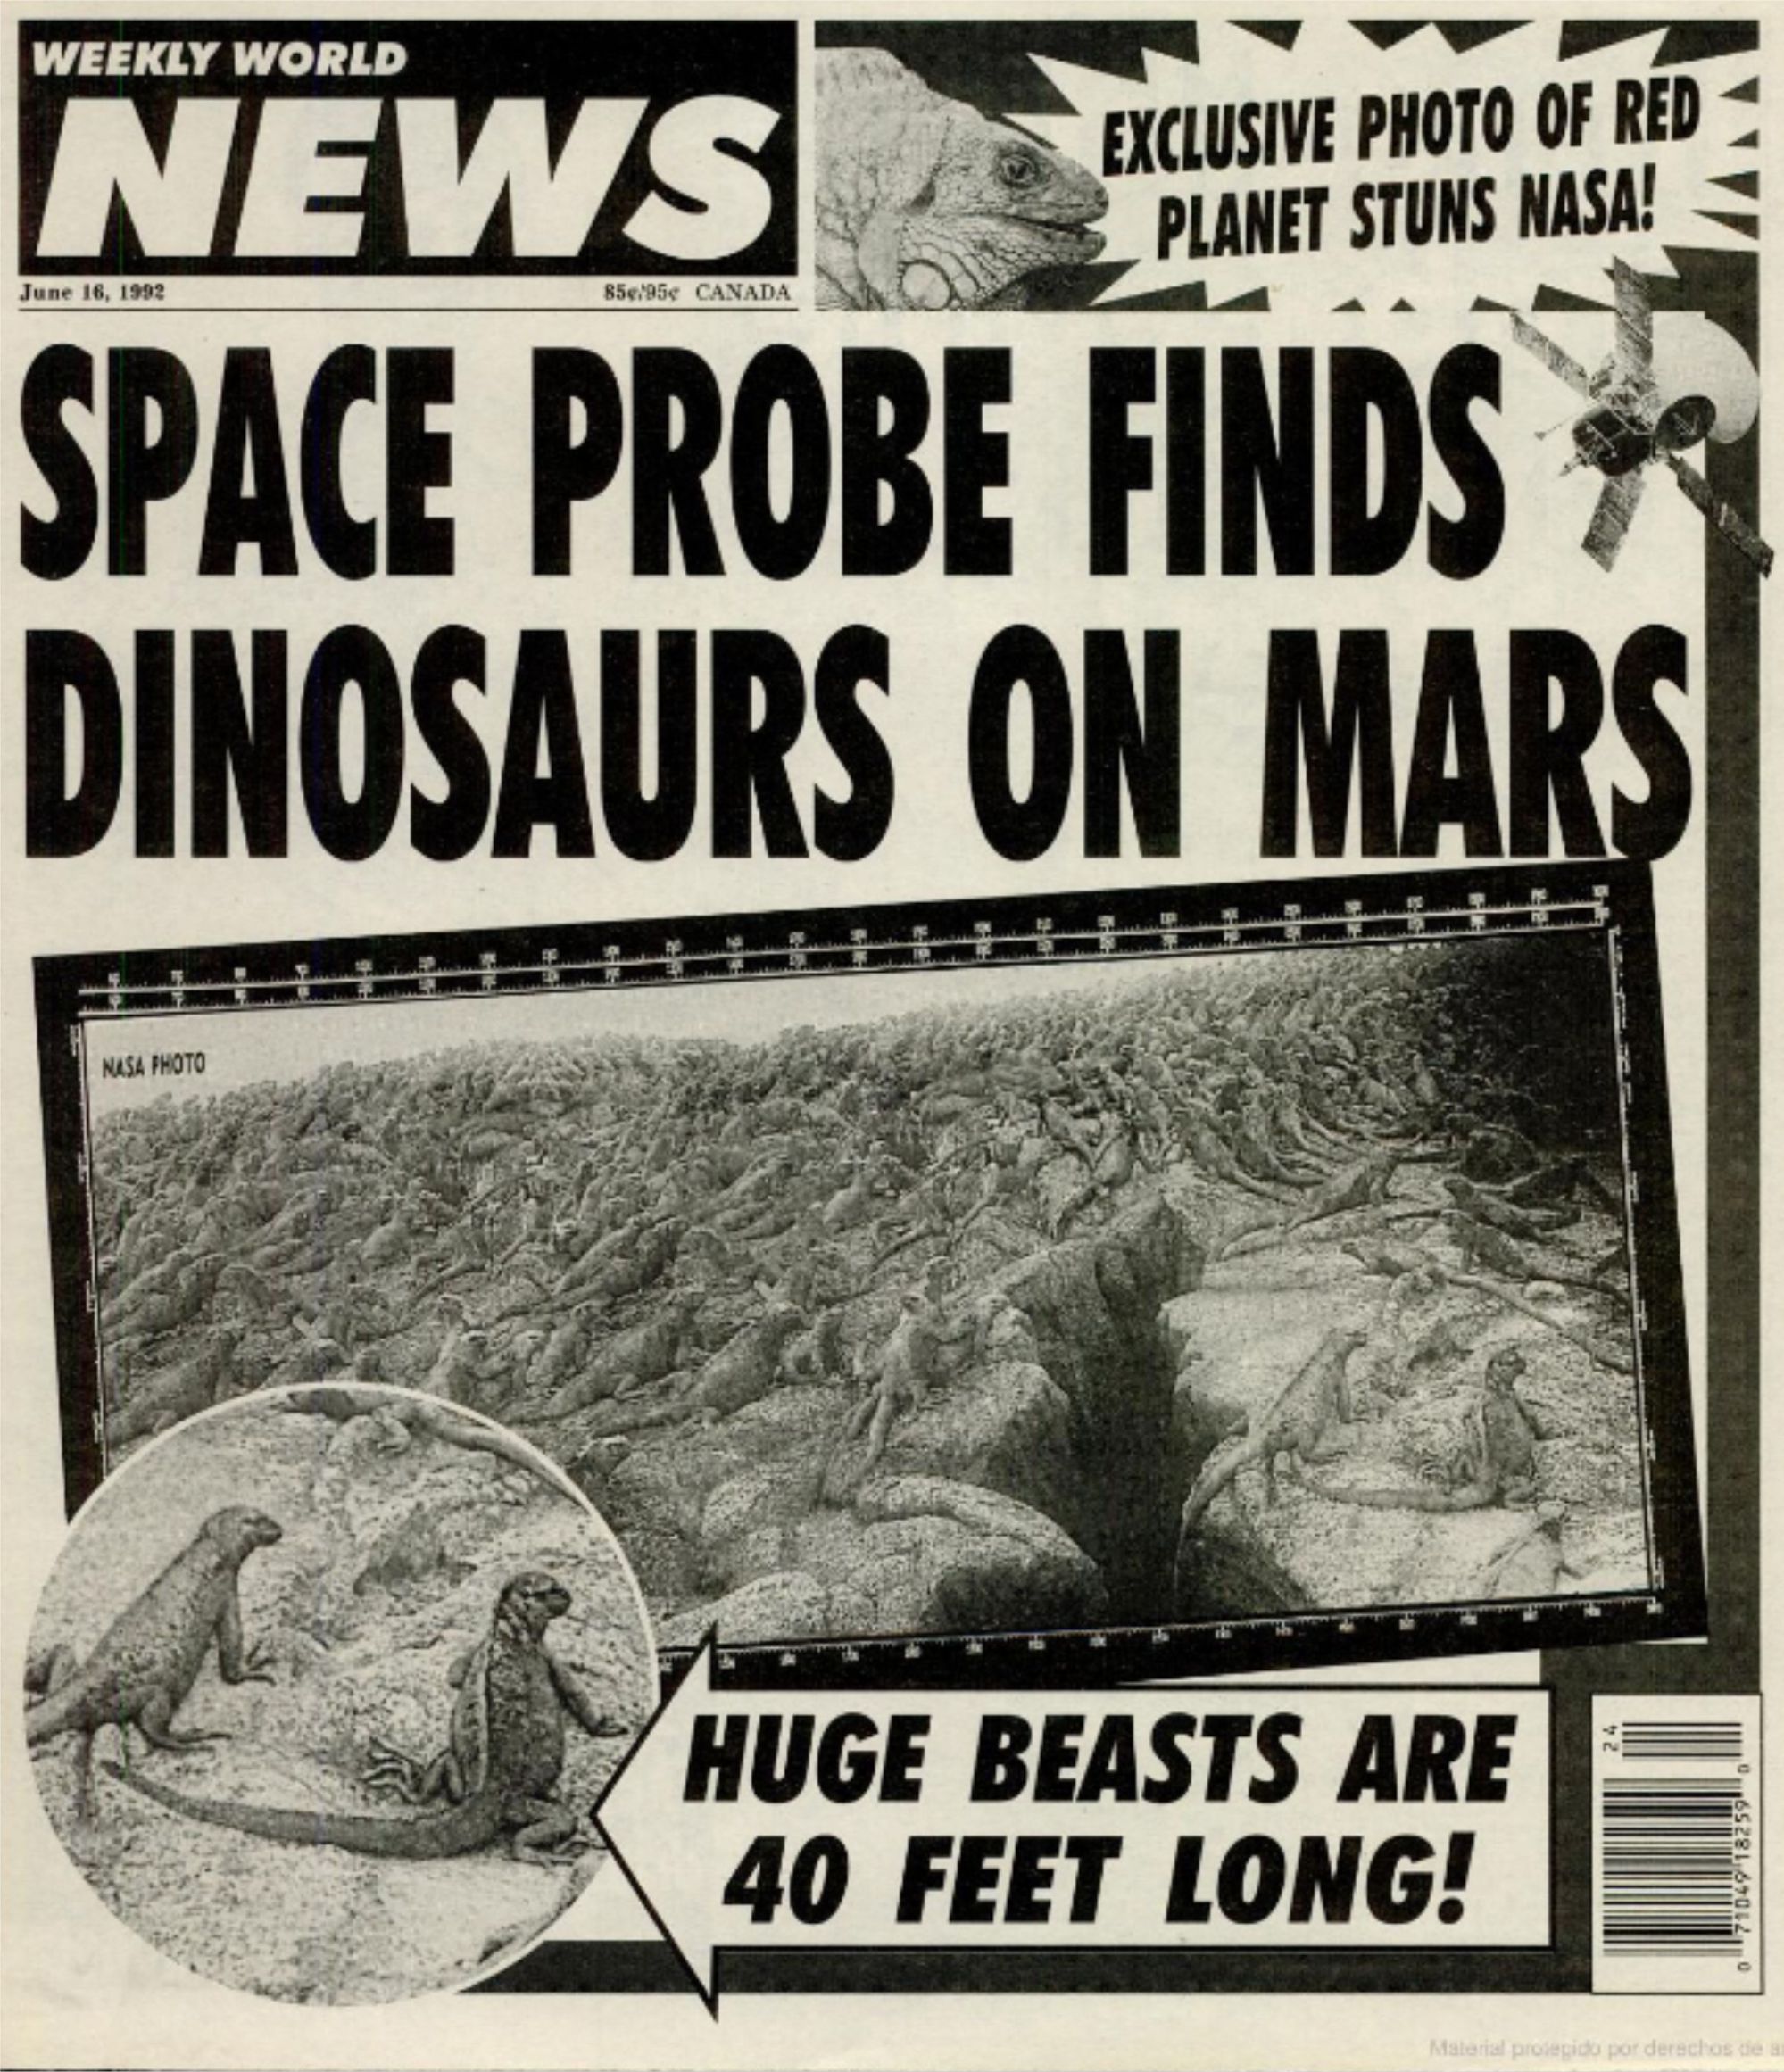 Dinosaurs in Mars